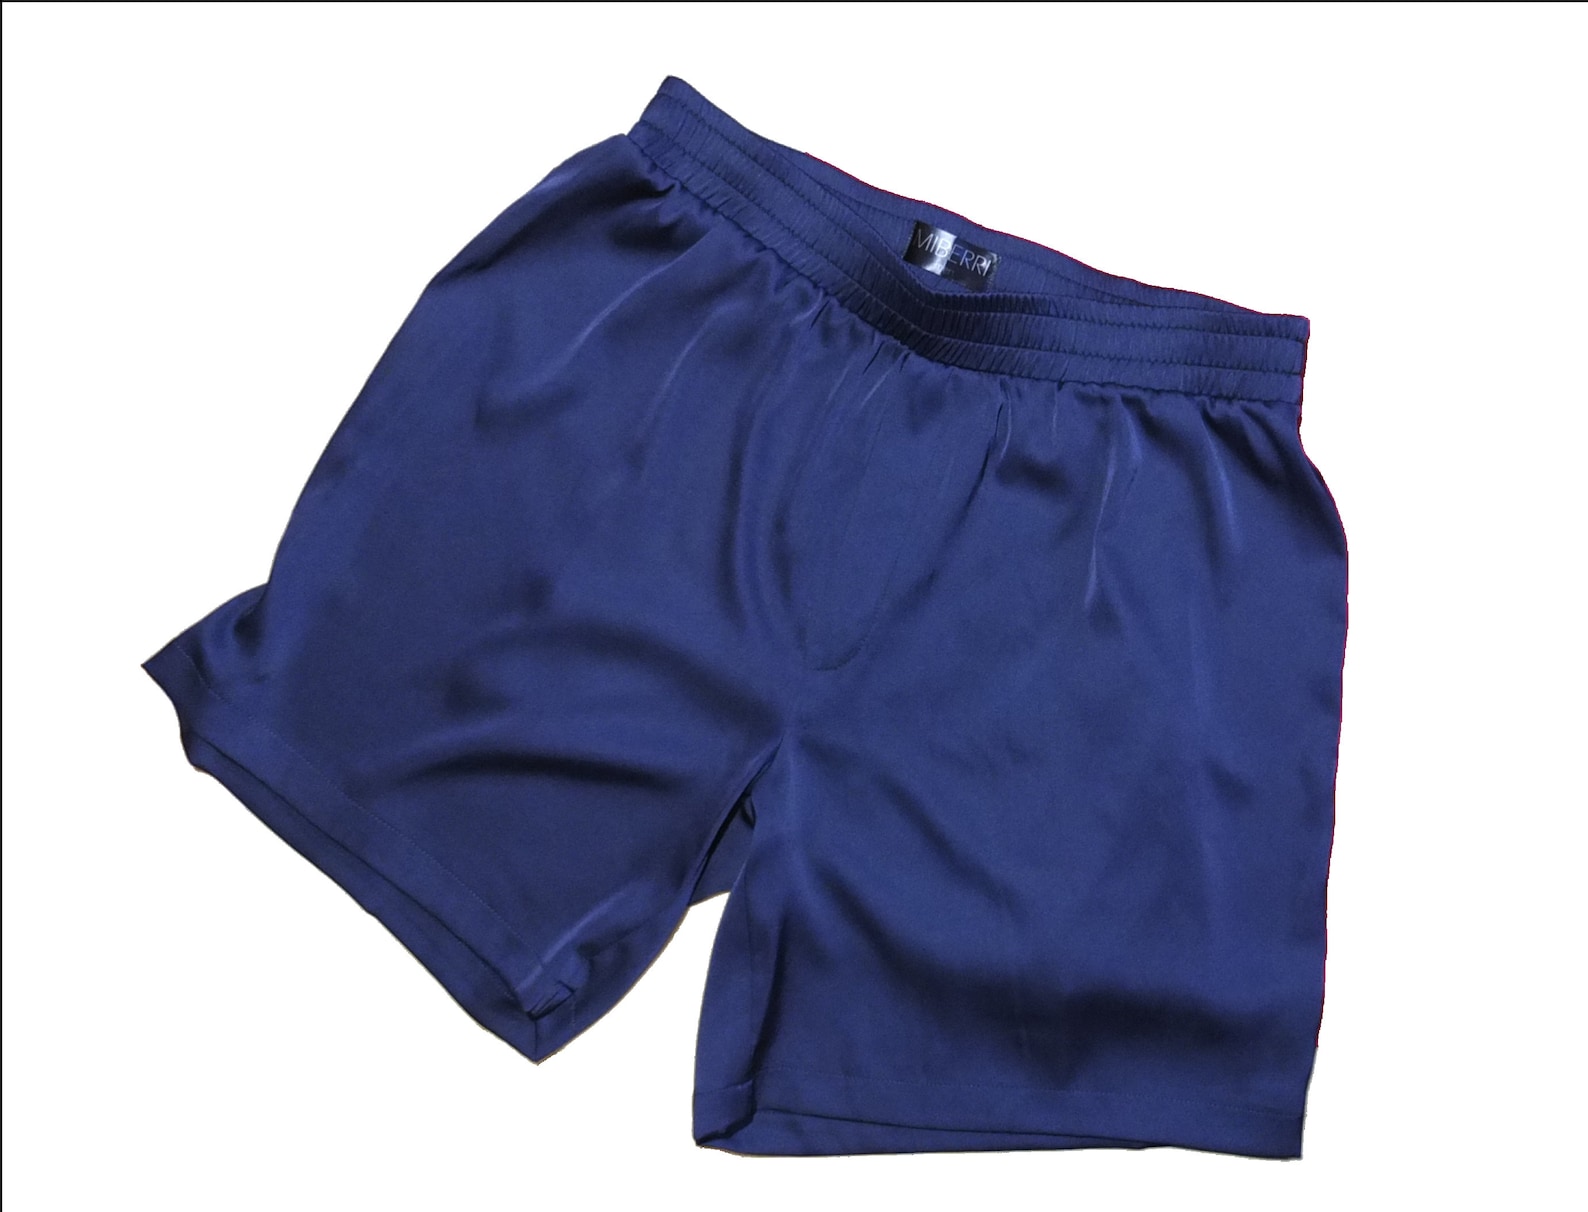 Sleeping Shorts for men. Elegant men's boxer shorts navy | Etsy